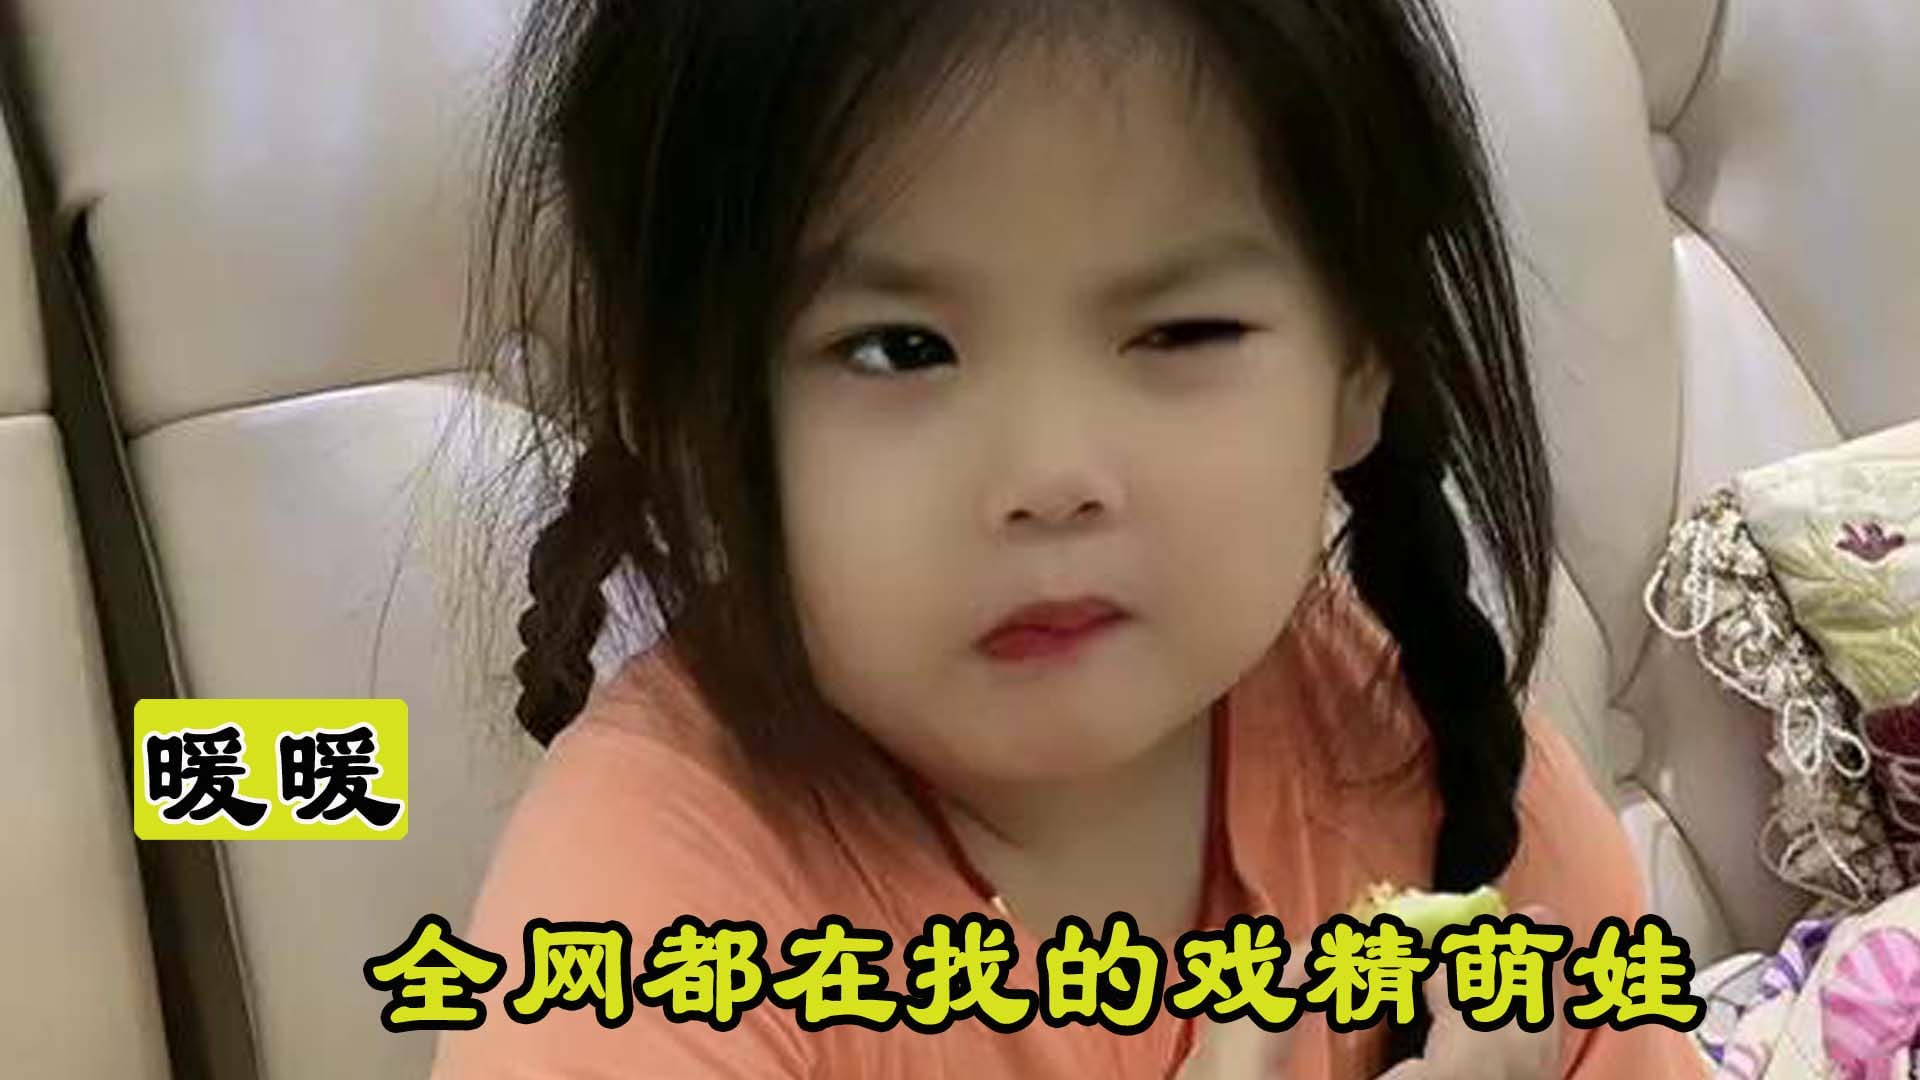 เด็กจีนร้องไห้